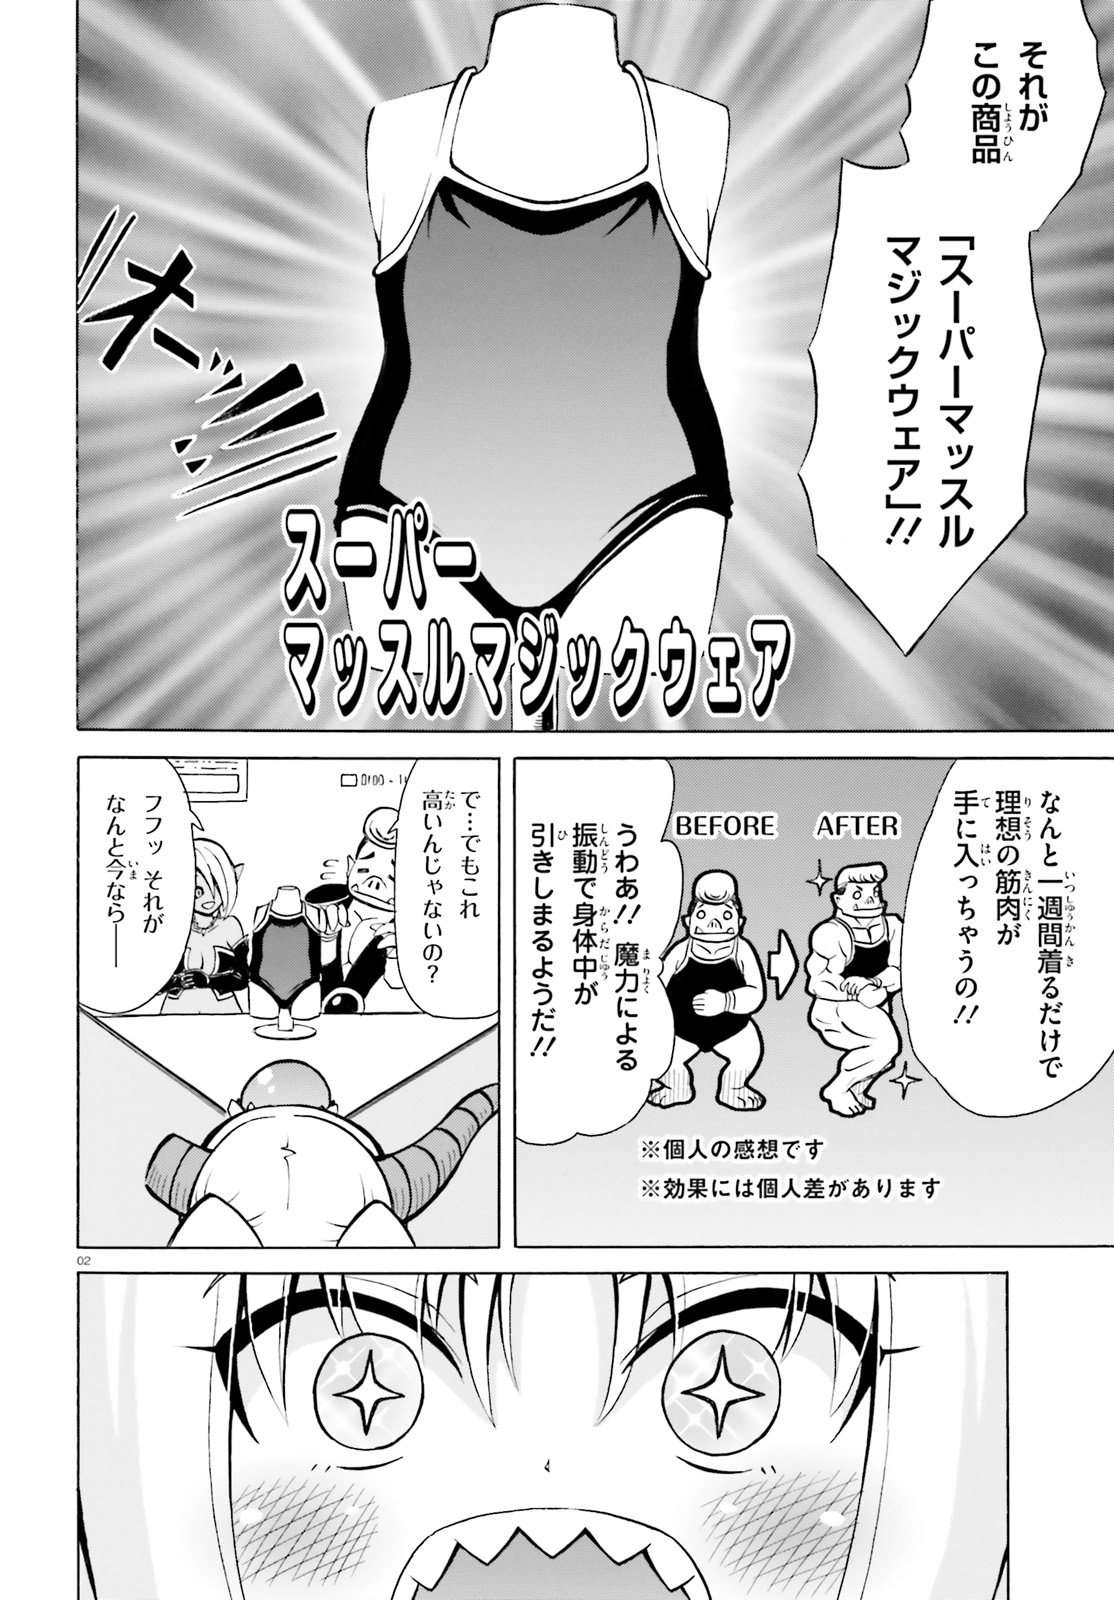 Beriaru-sama wa Shitenno no Naka Demo × × - Chapter 6.5 - Page 2